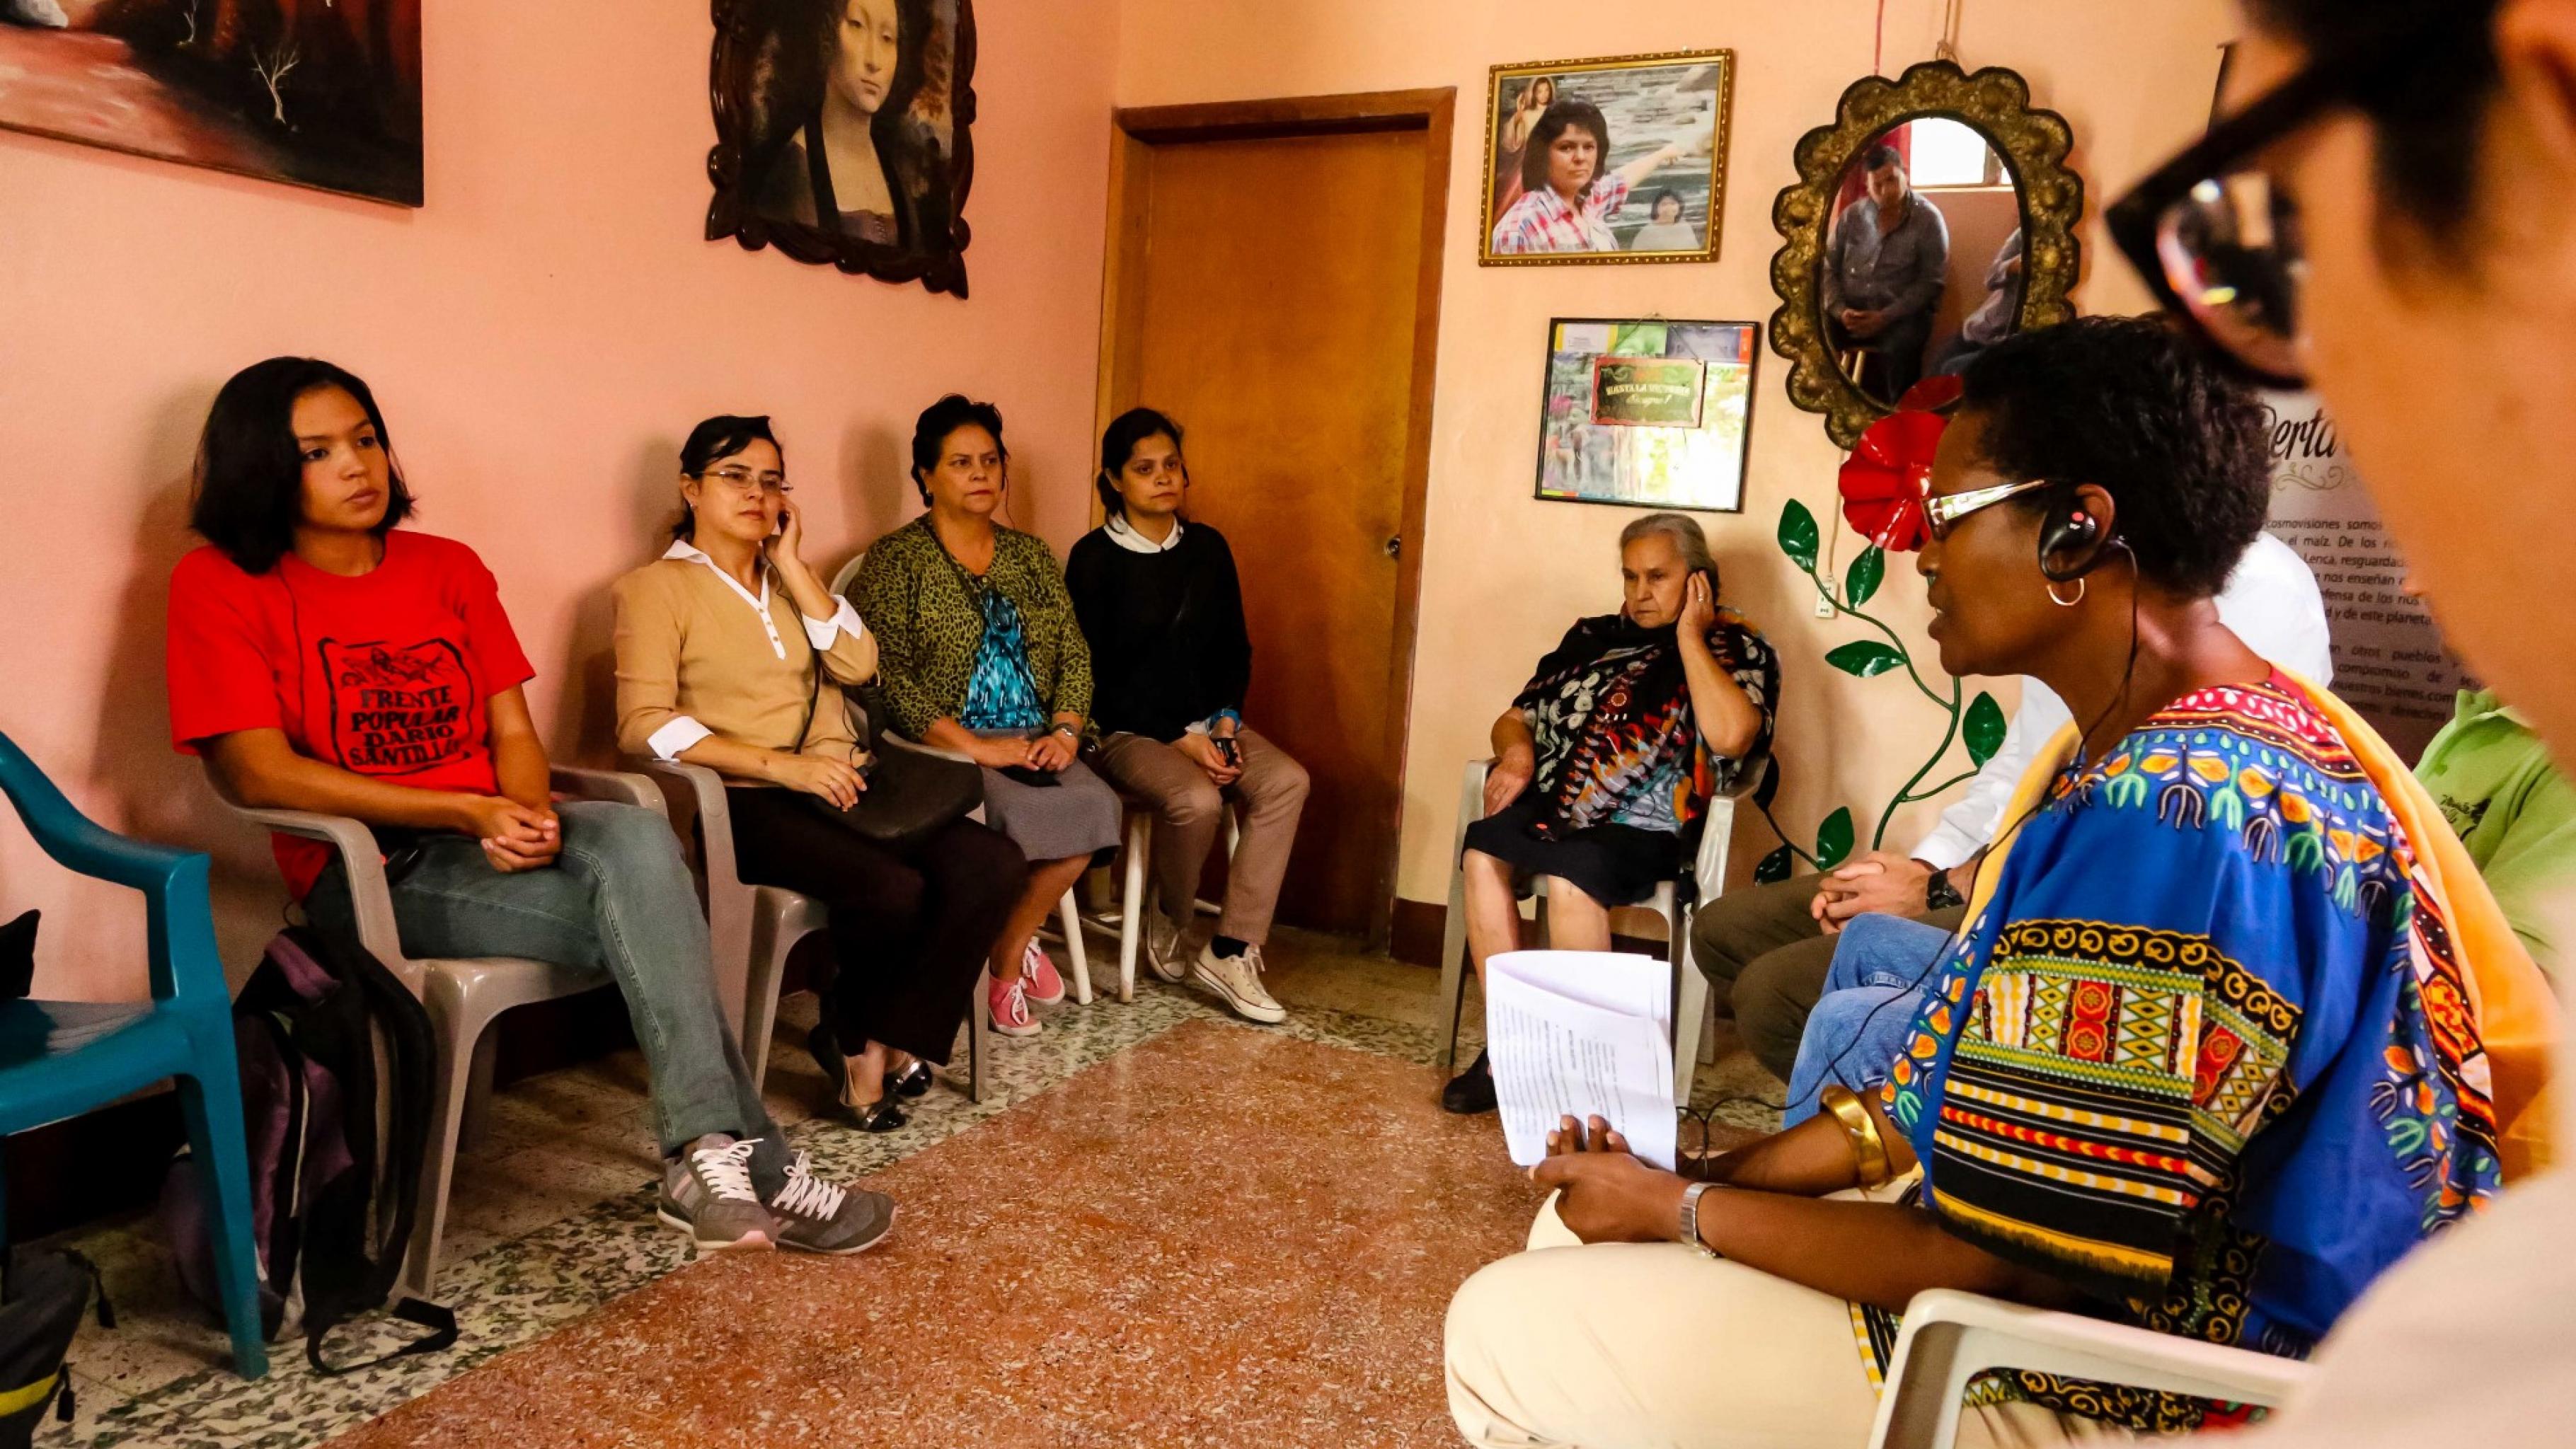 In einem Zimmer sitzen Frauen und Männer auf Plastikstühlen im Kreis und sprechen miteinander. An den Wänden hängen Bilder, unter anderem von Berta Cáceres.